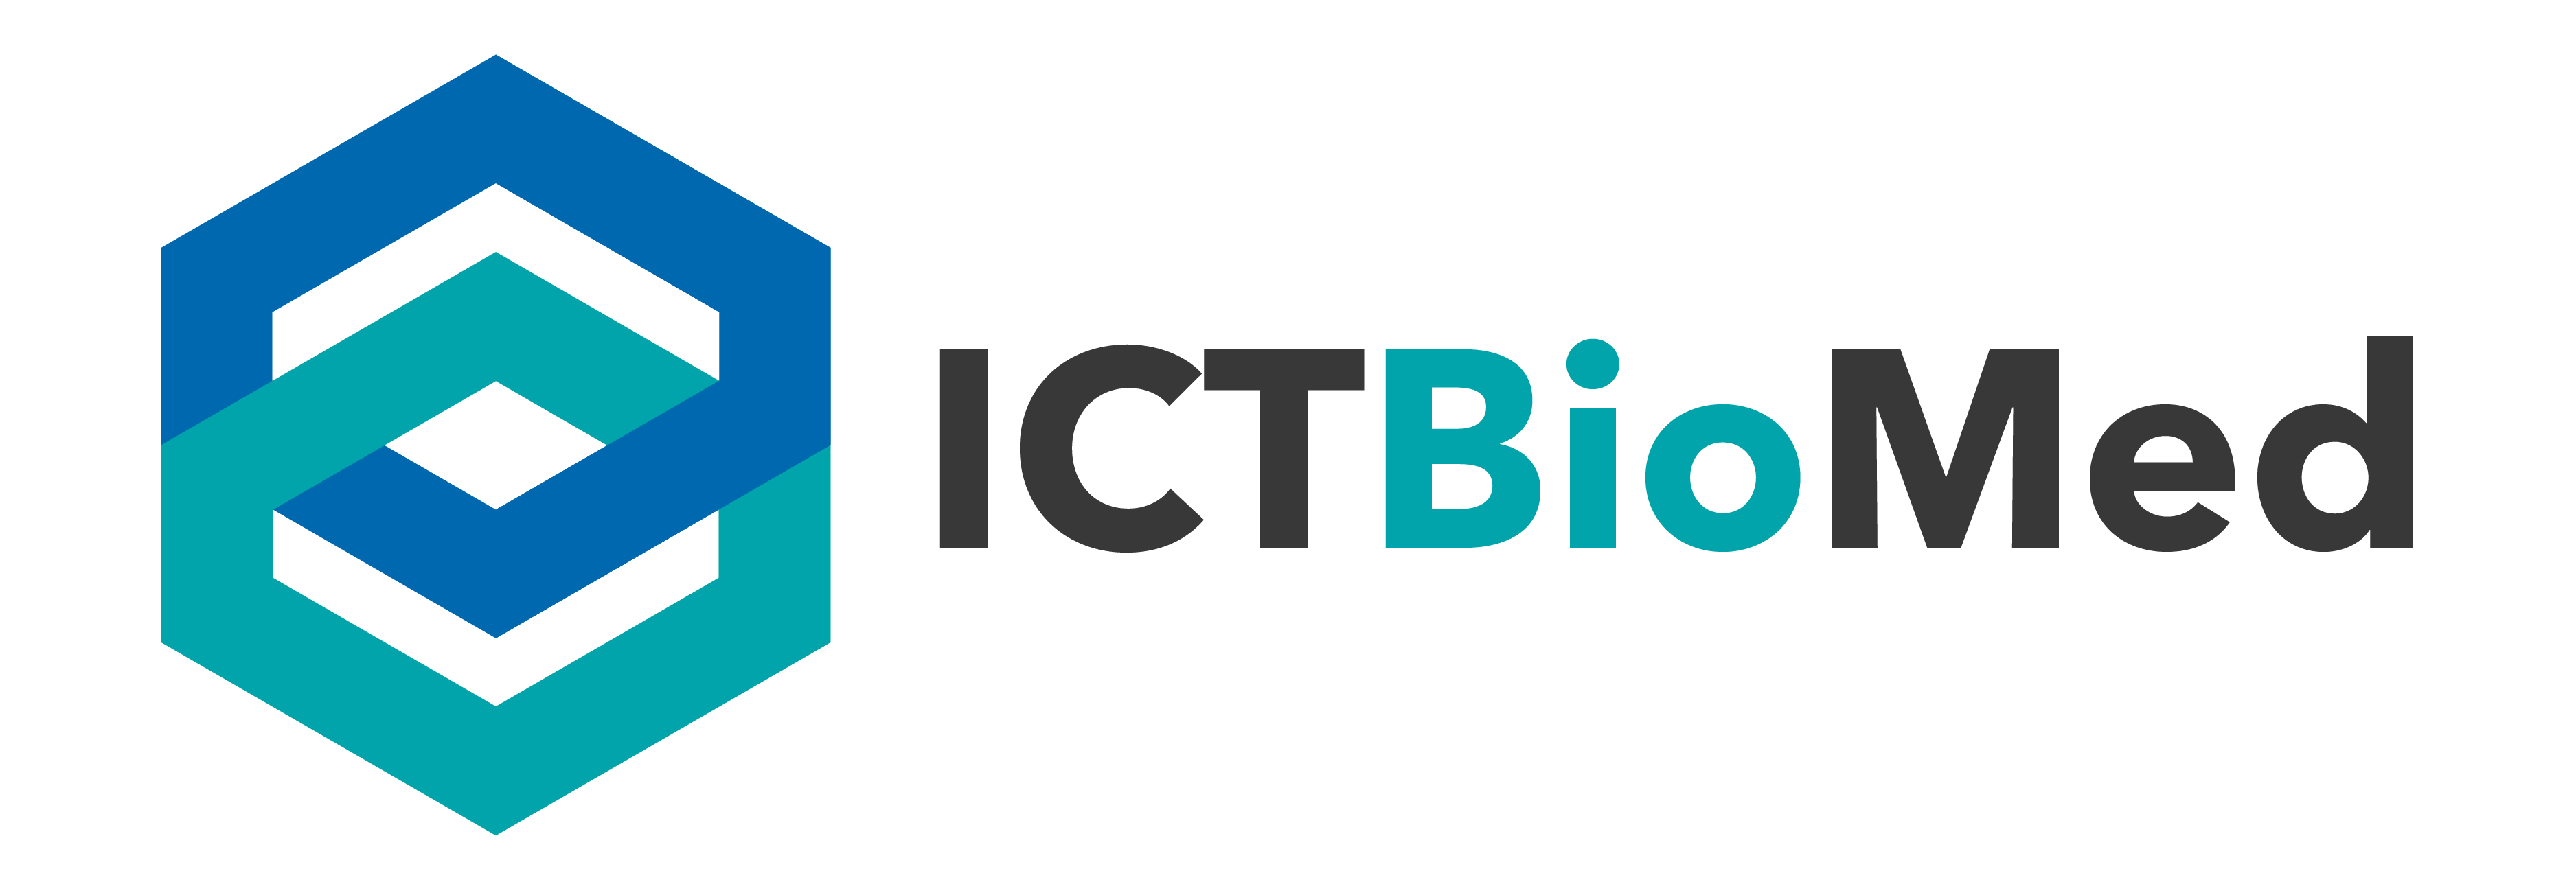 ICT Biomed Logo